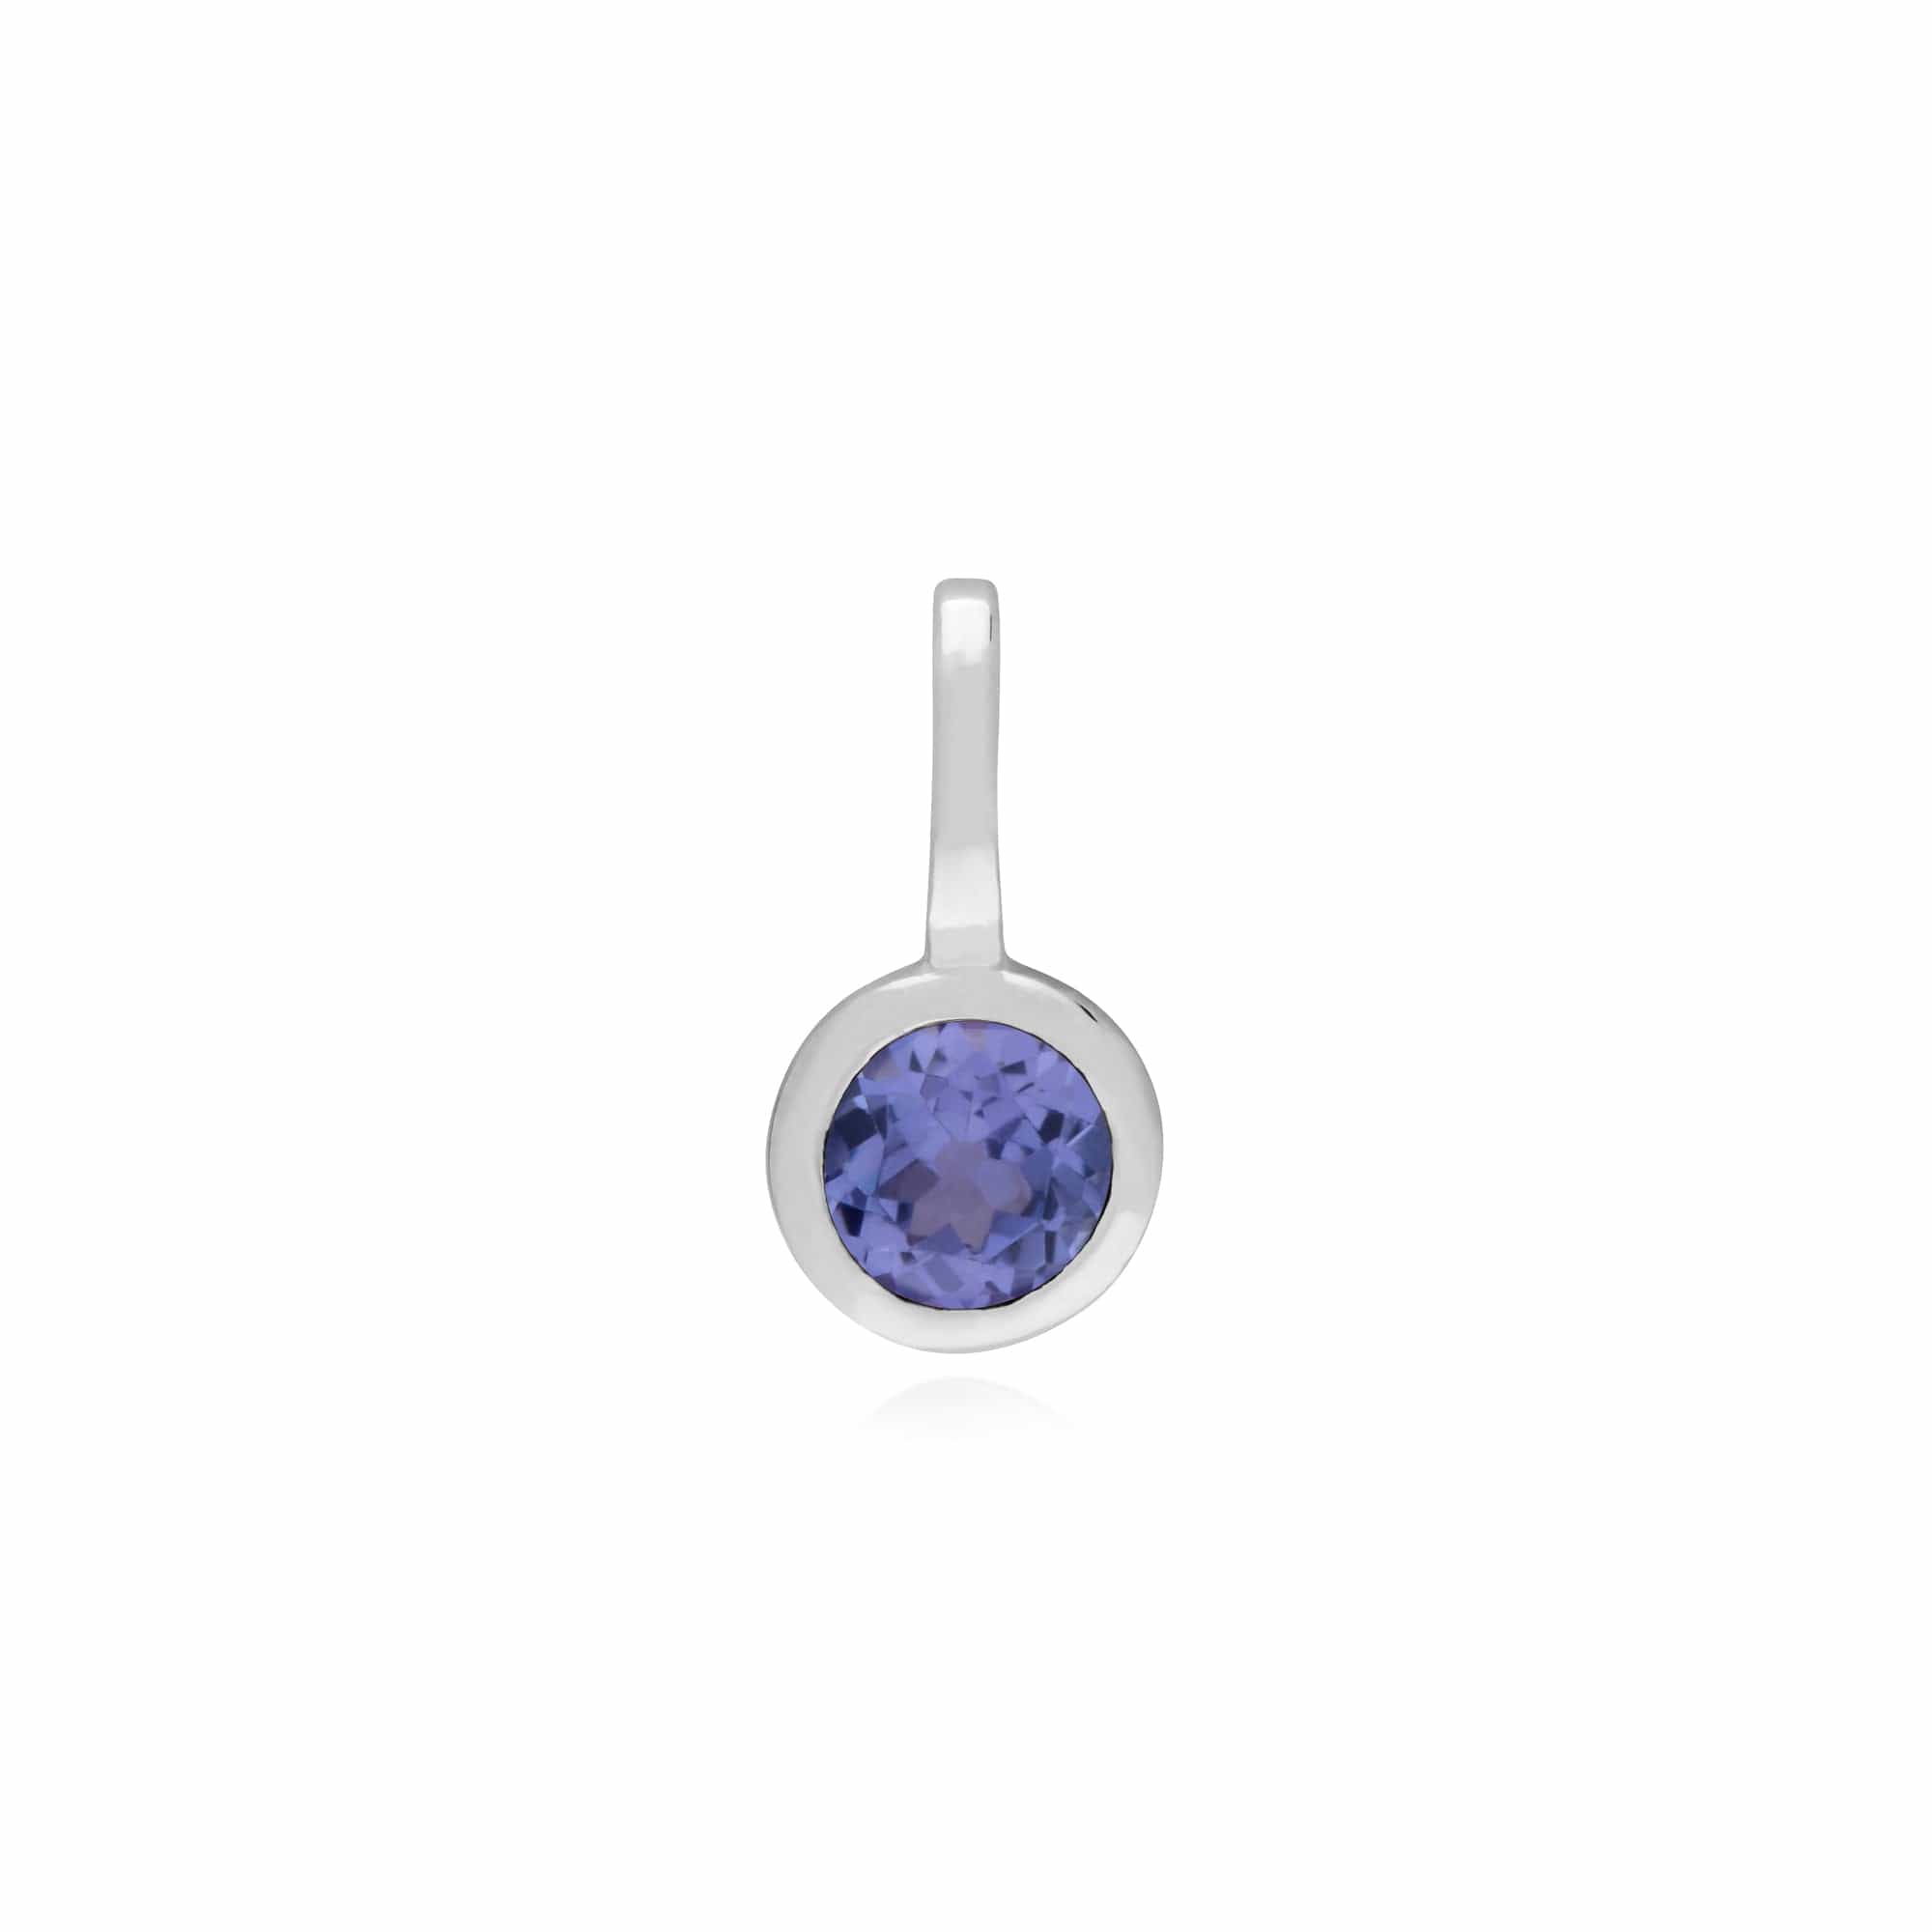 270P027606925-270P026601925 Classic Swirl Heart Lock Pendant & Tanzanite Charm in 925 Sterling Silver 2